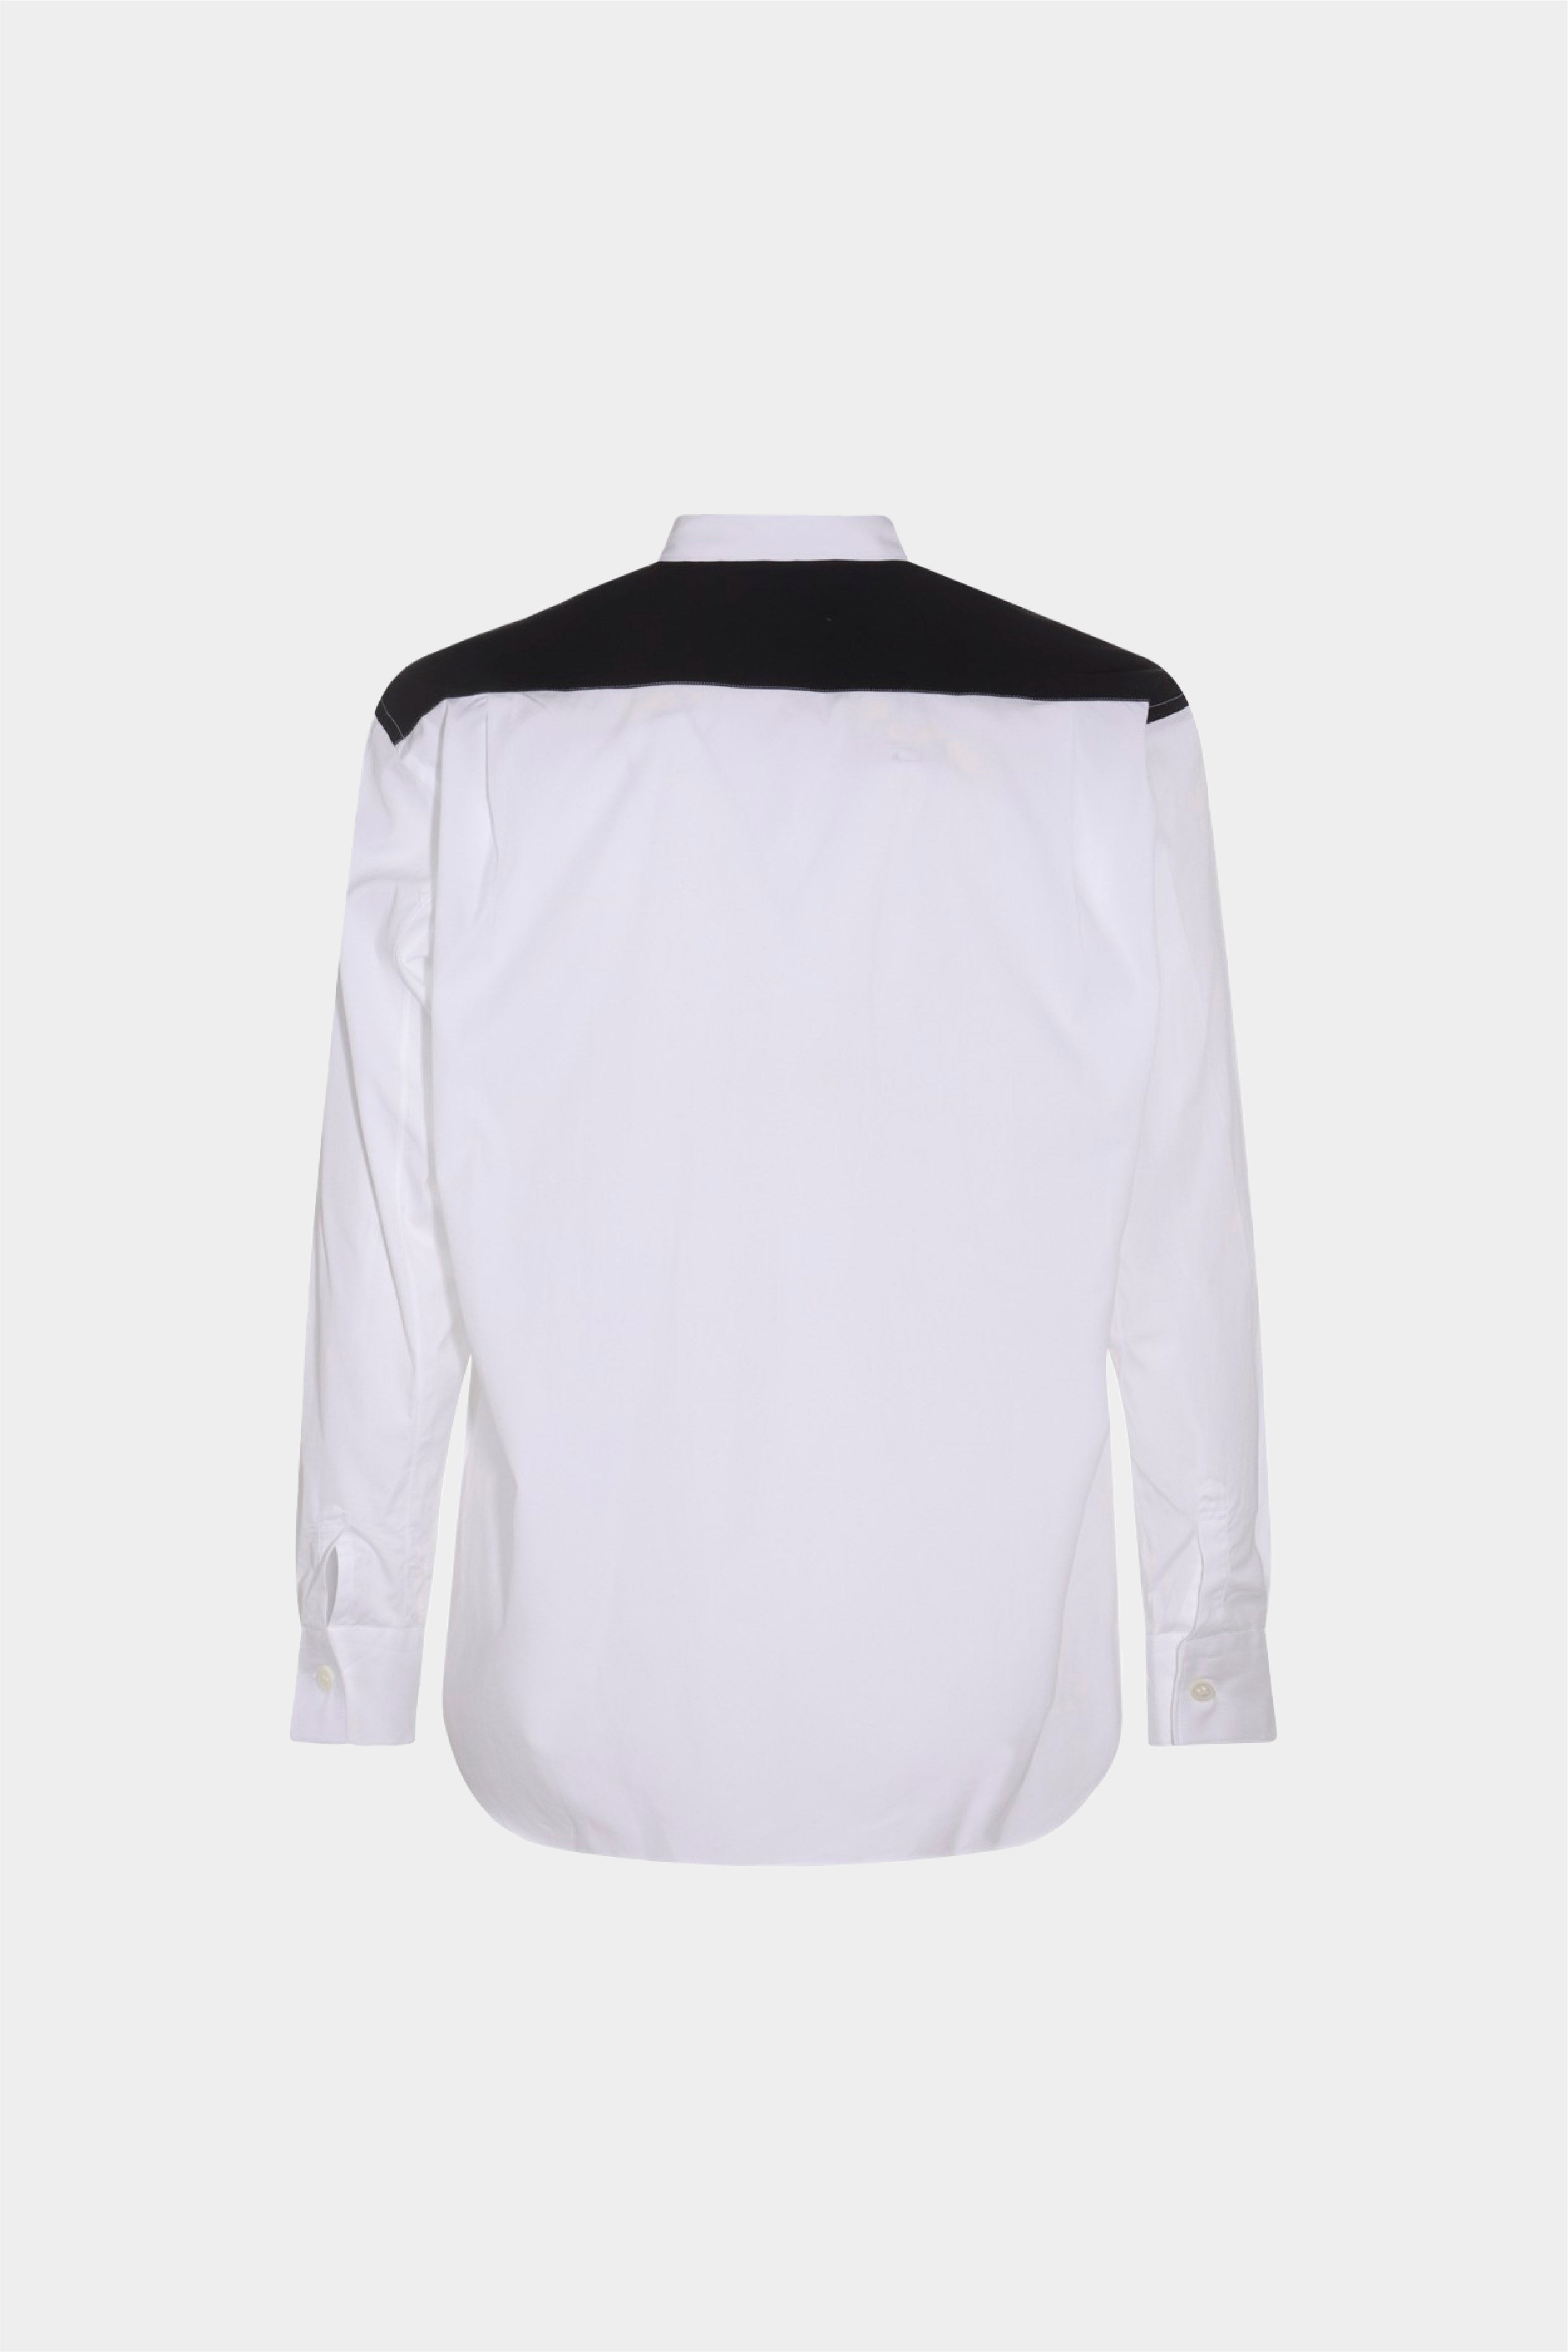 Selectshop FRAME - COMME DES GARÇONS SHIRT Fresh Shirt Shirts Concept Store Dubai